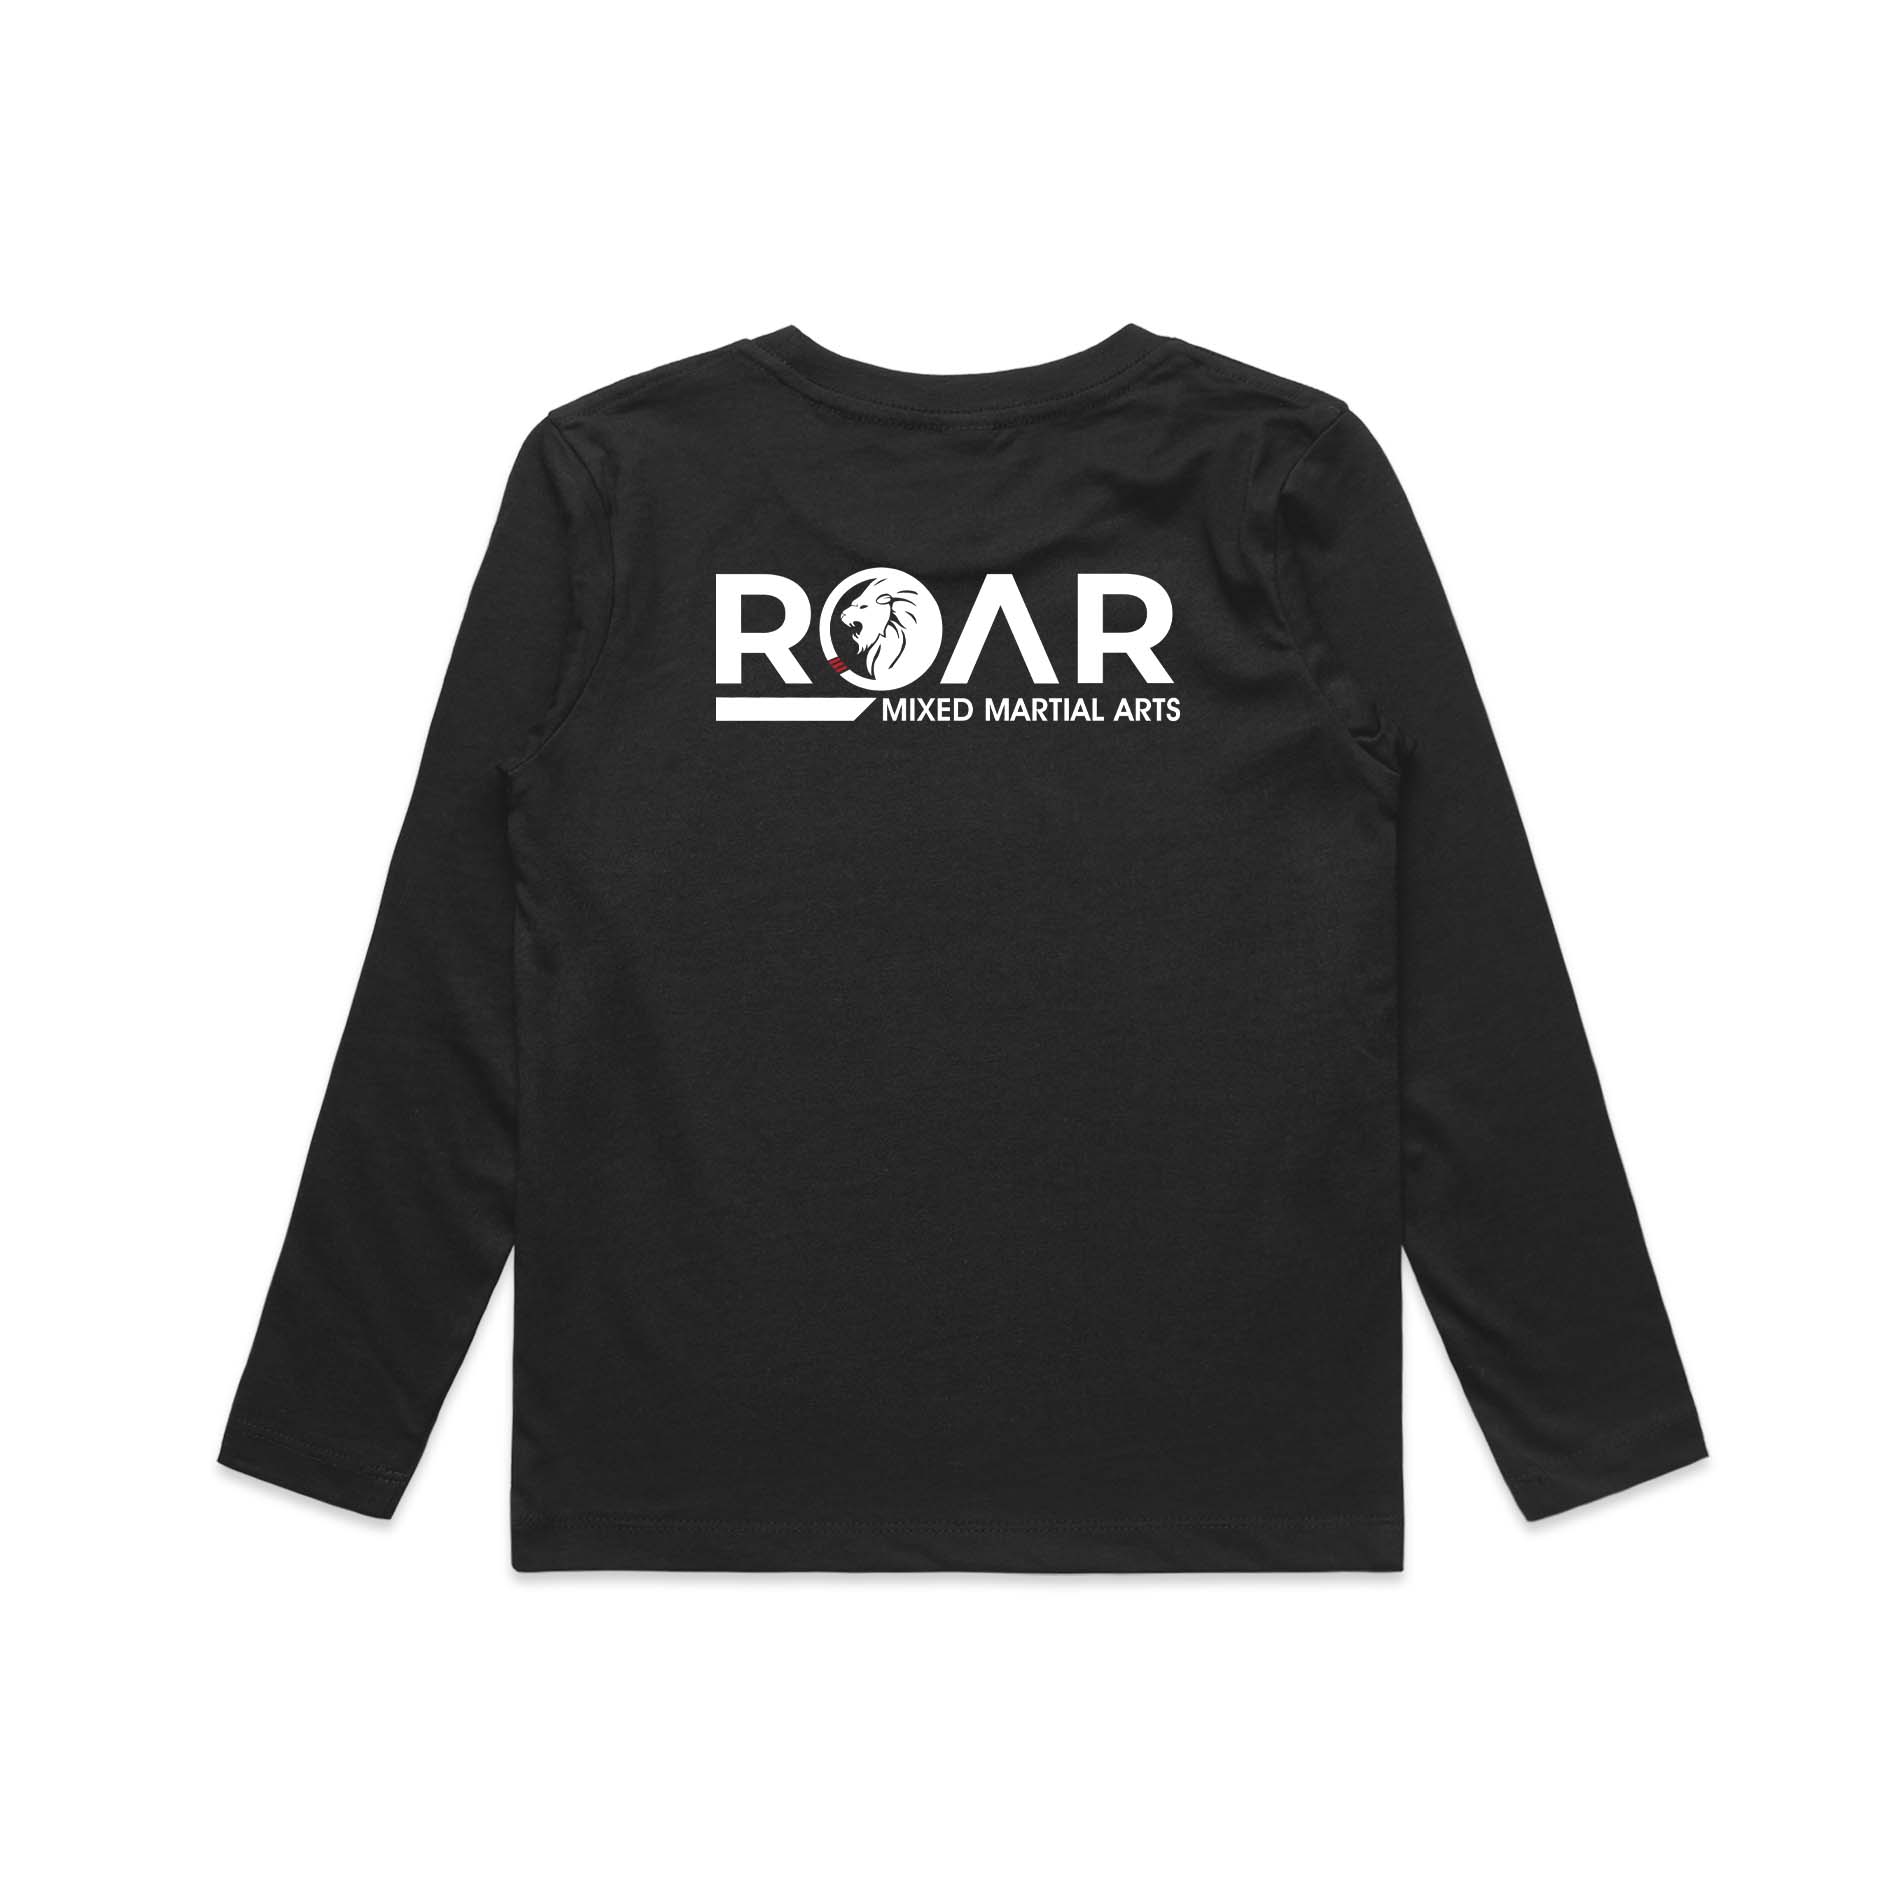 Roar MMA Kids Double Sided T-shirt long sleeve